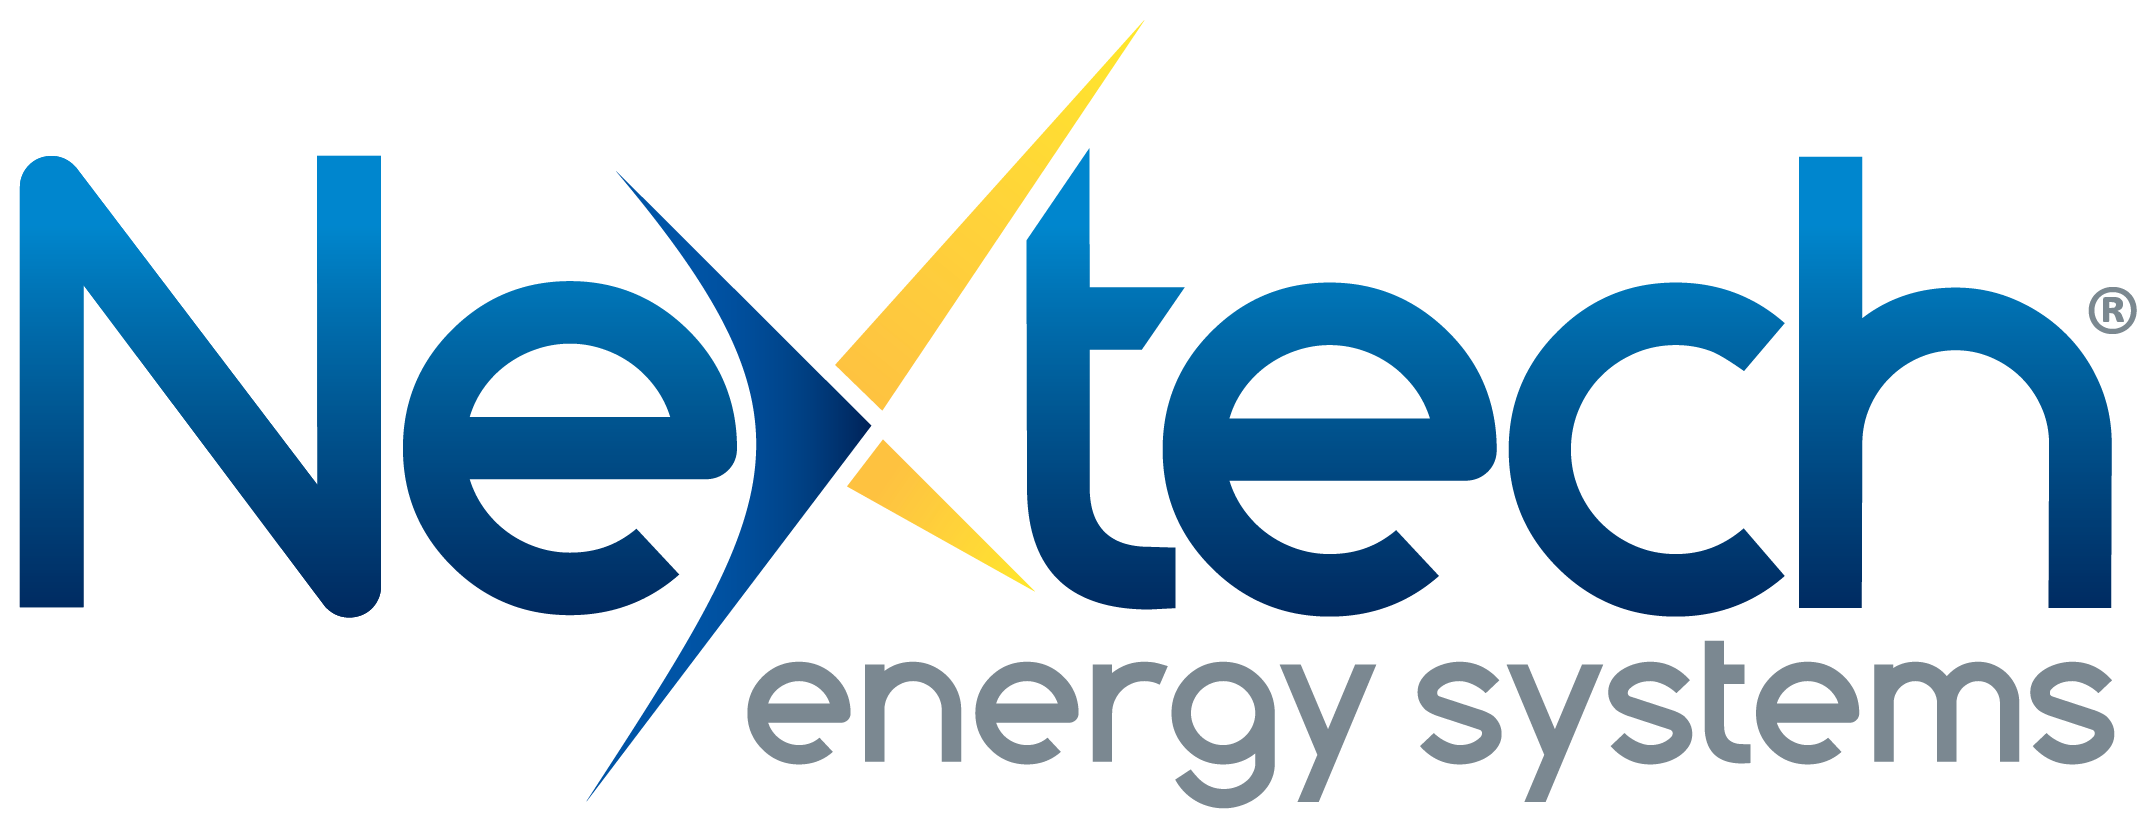 Nextech Energy Systems, LLC Logo